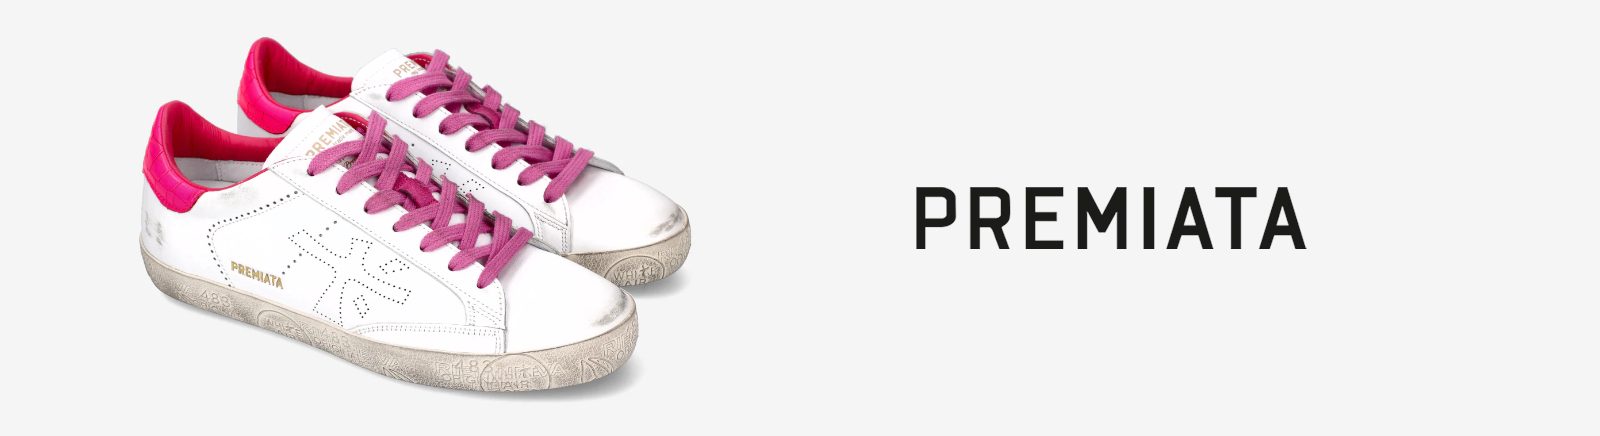 Premiata Schuhe für Damen online bestellen im Juppen Shop